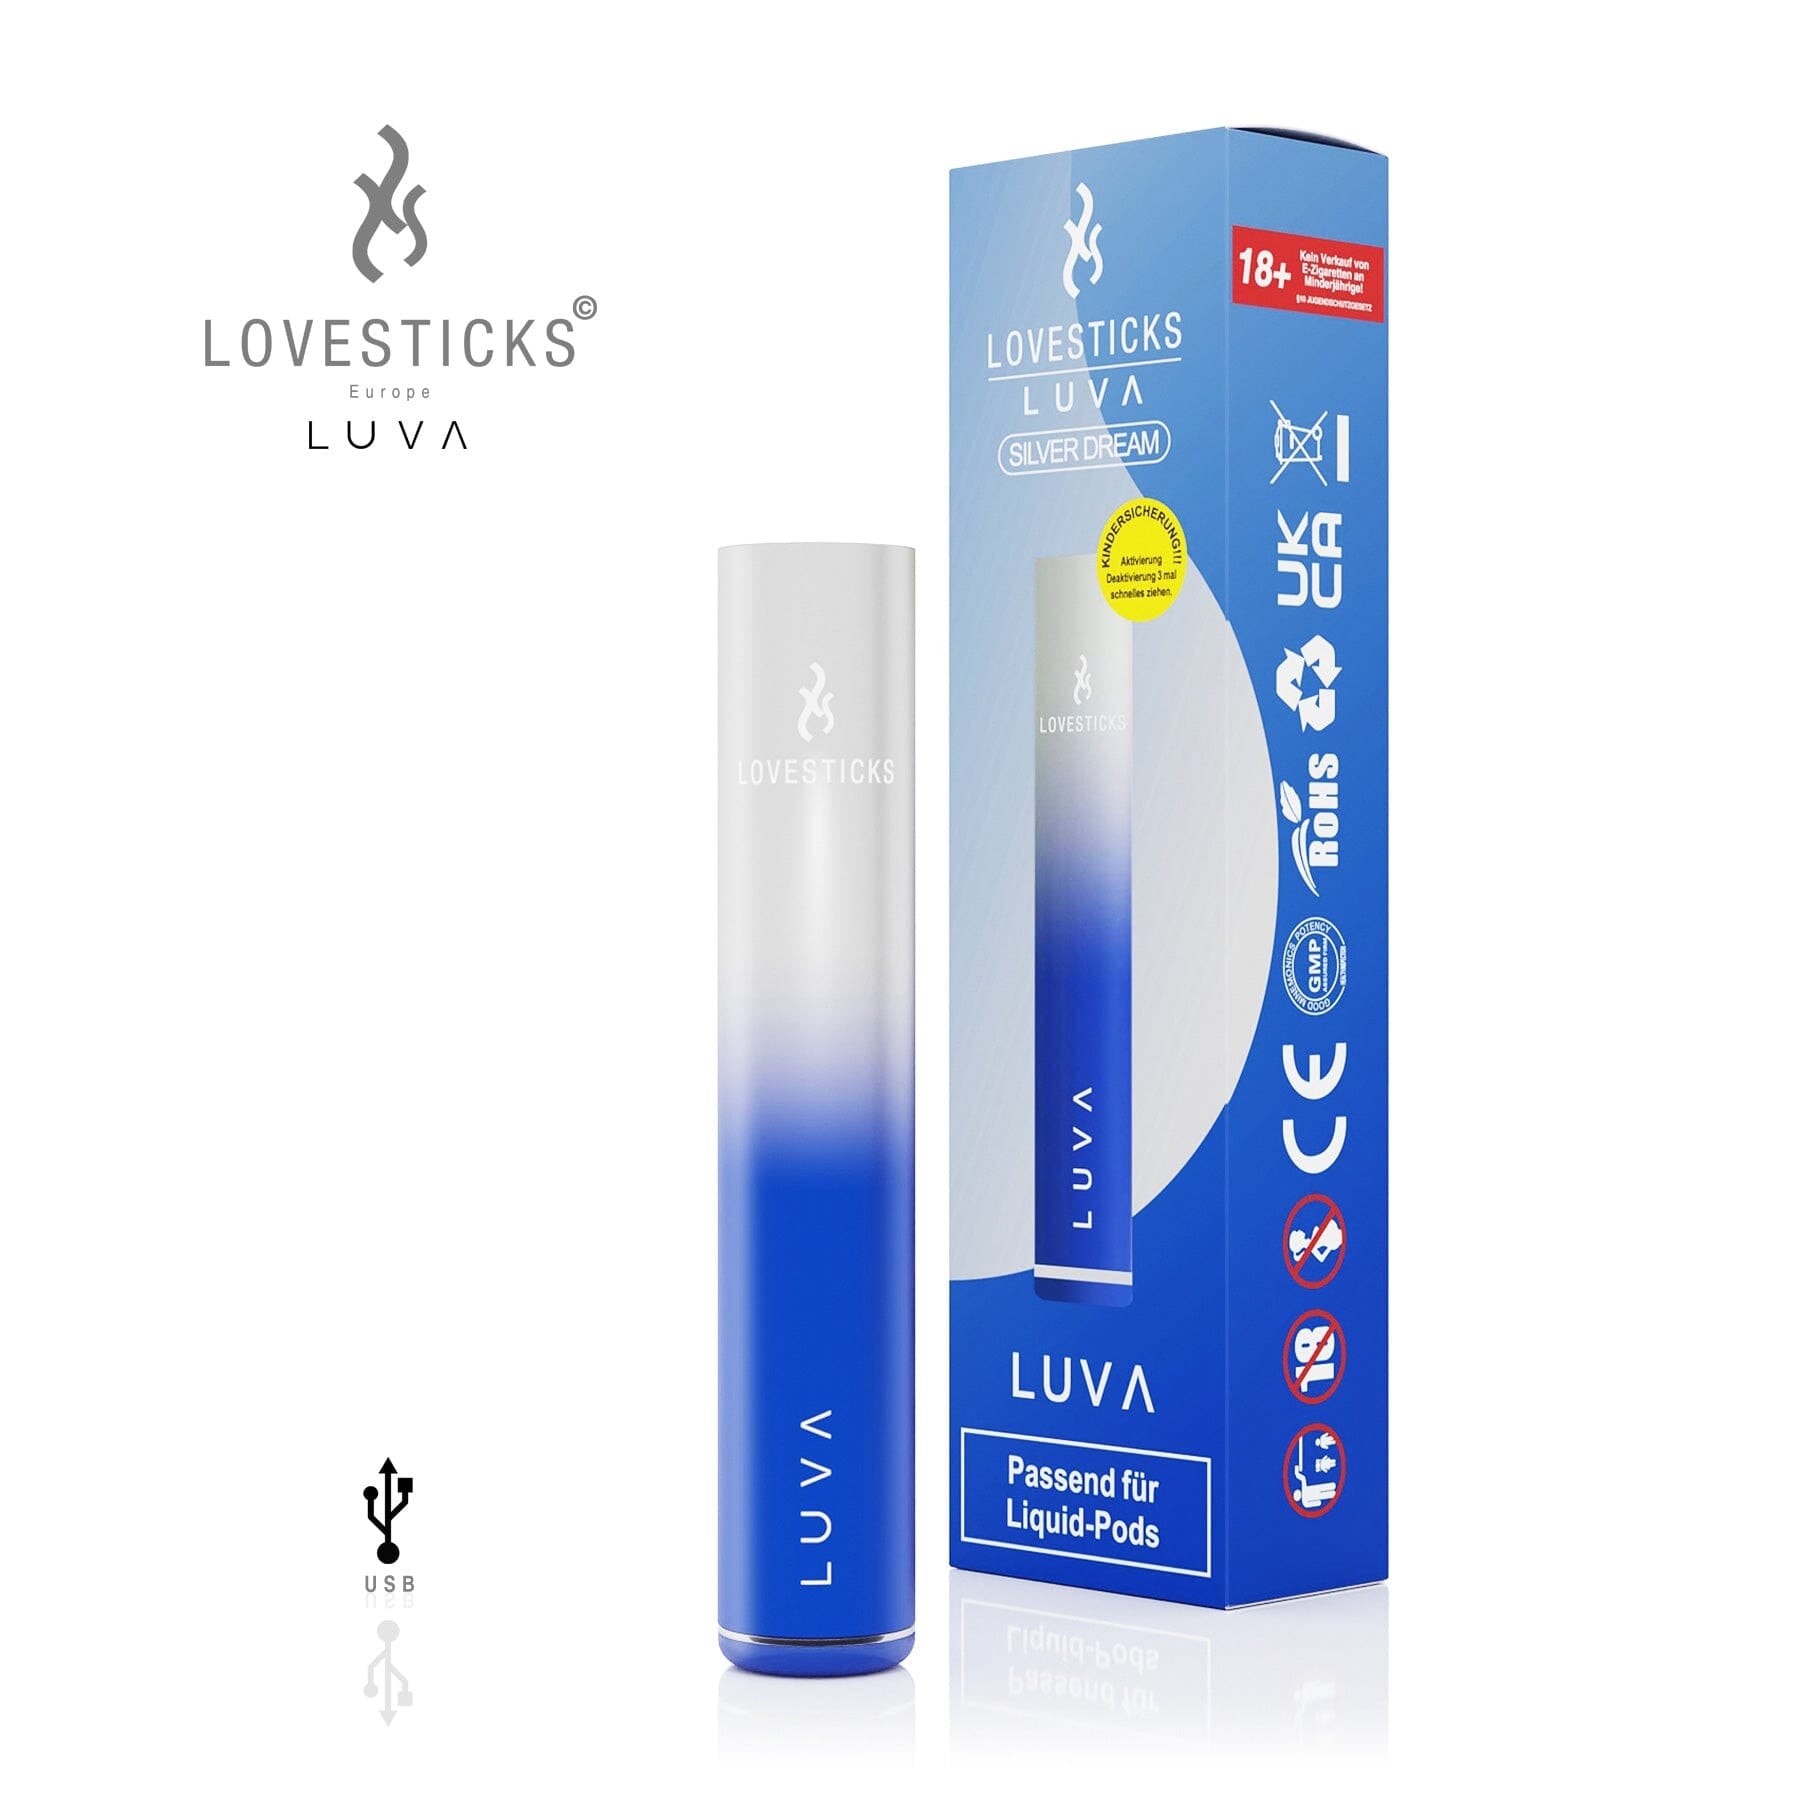 LOVESTICKS - LUVA SILVER DREAM (8672764264780)